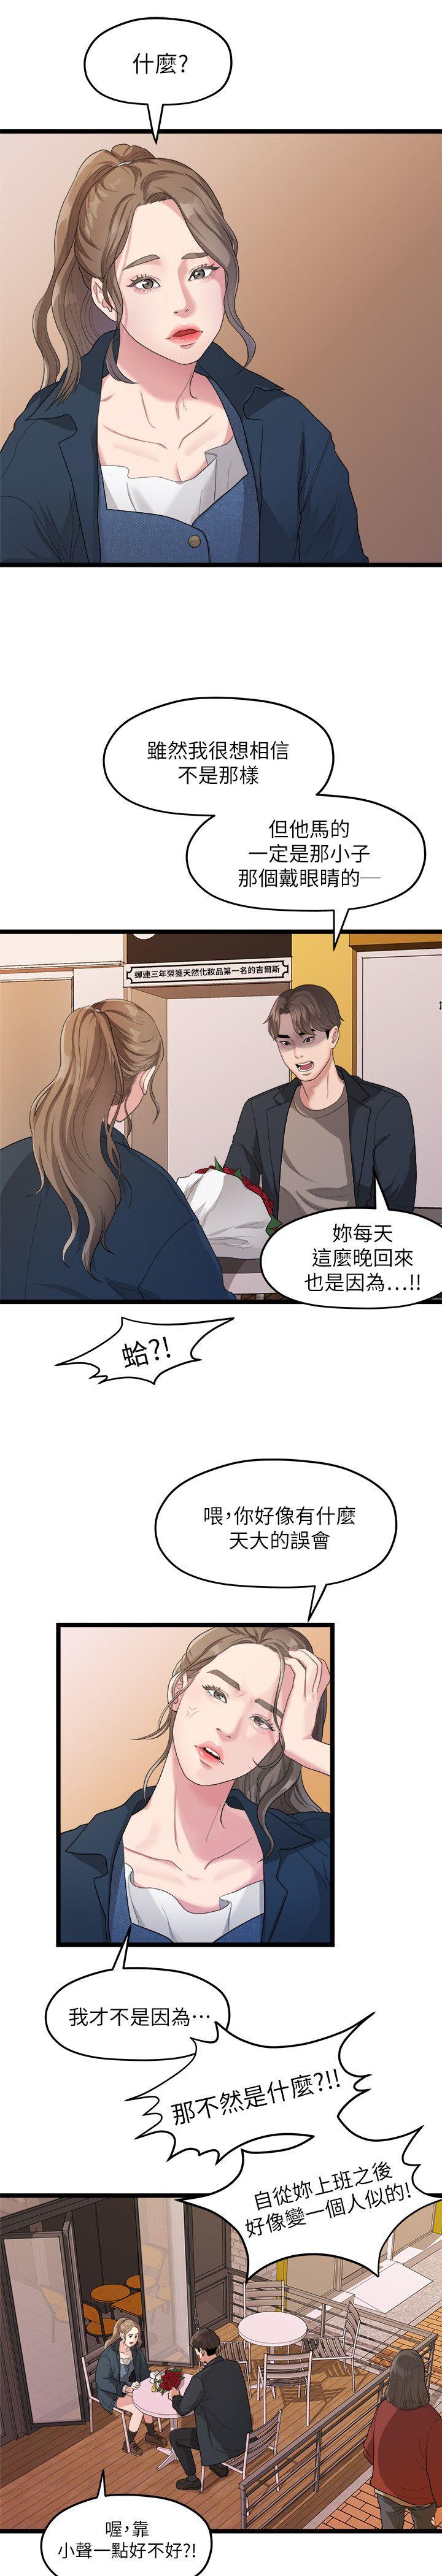 韩国污漫画 我們的非常關系 第19话-是因为那小子吧? 11